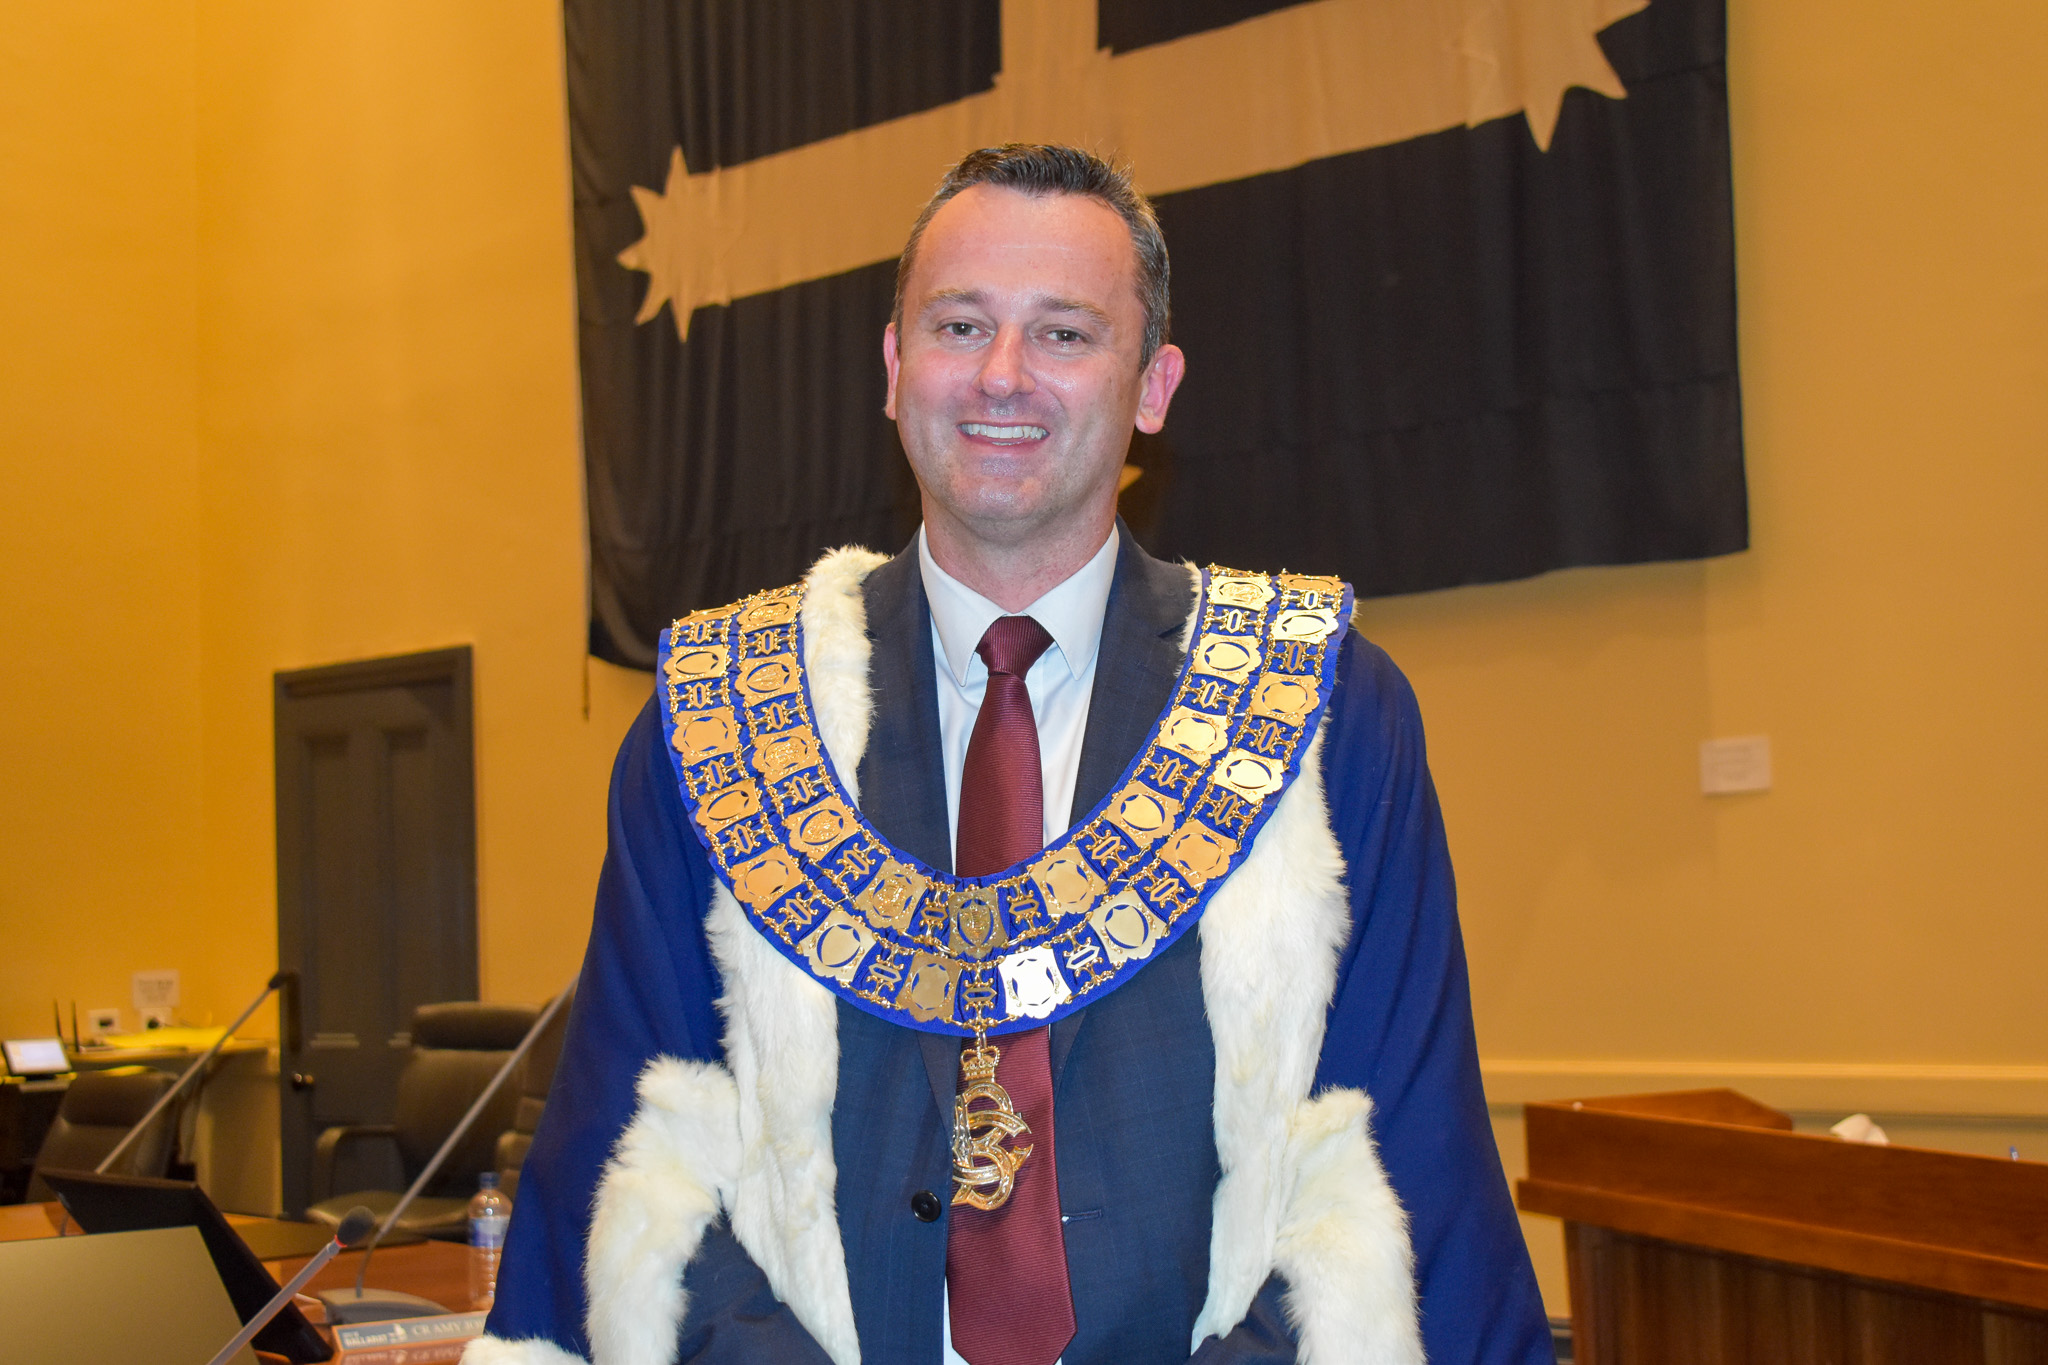 Mayor of Ballarat Daniel Moloney